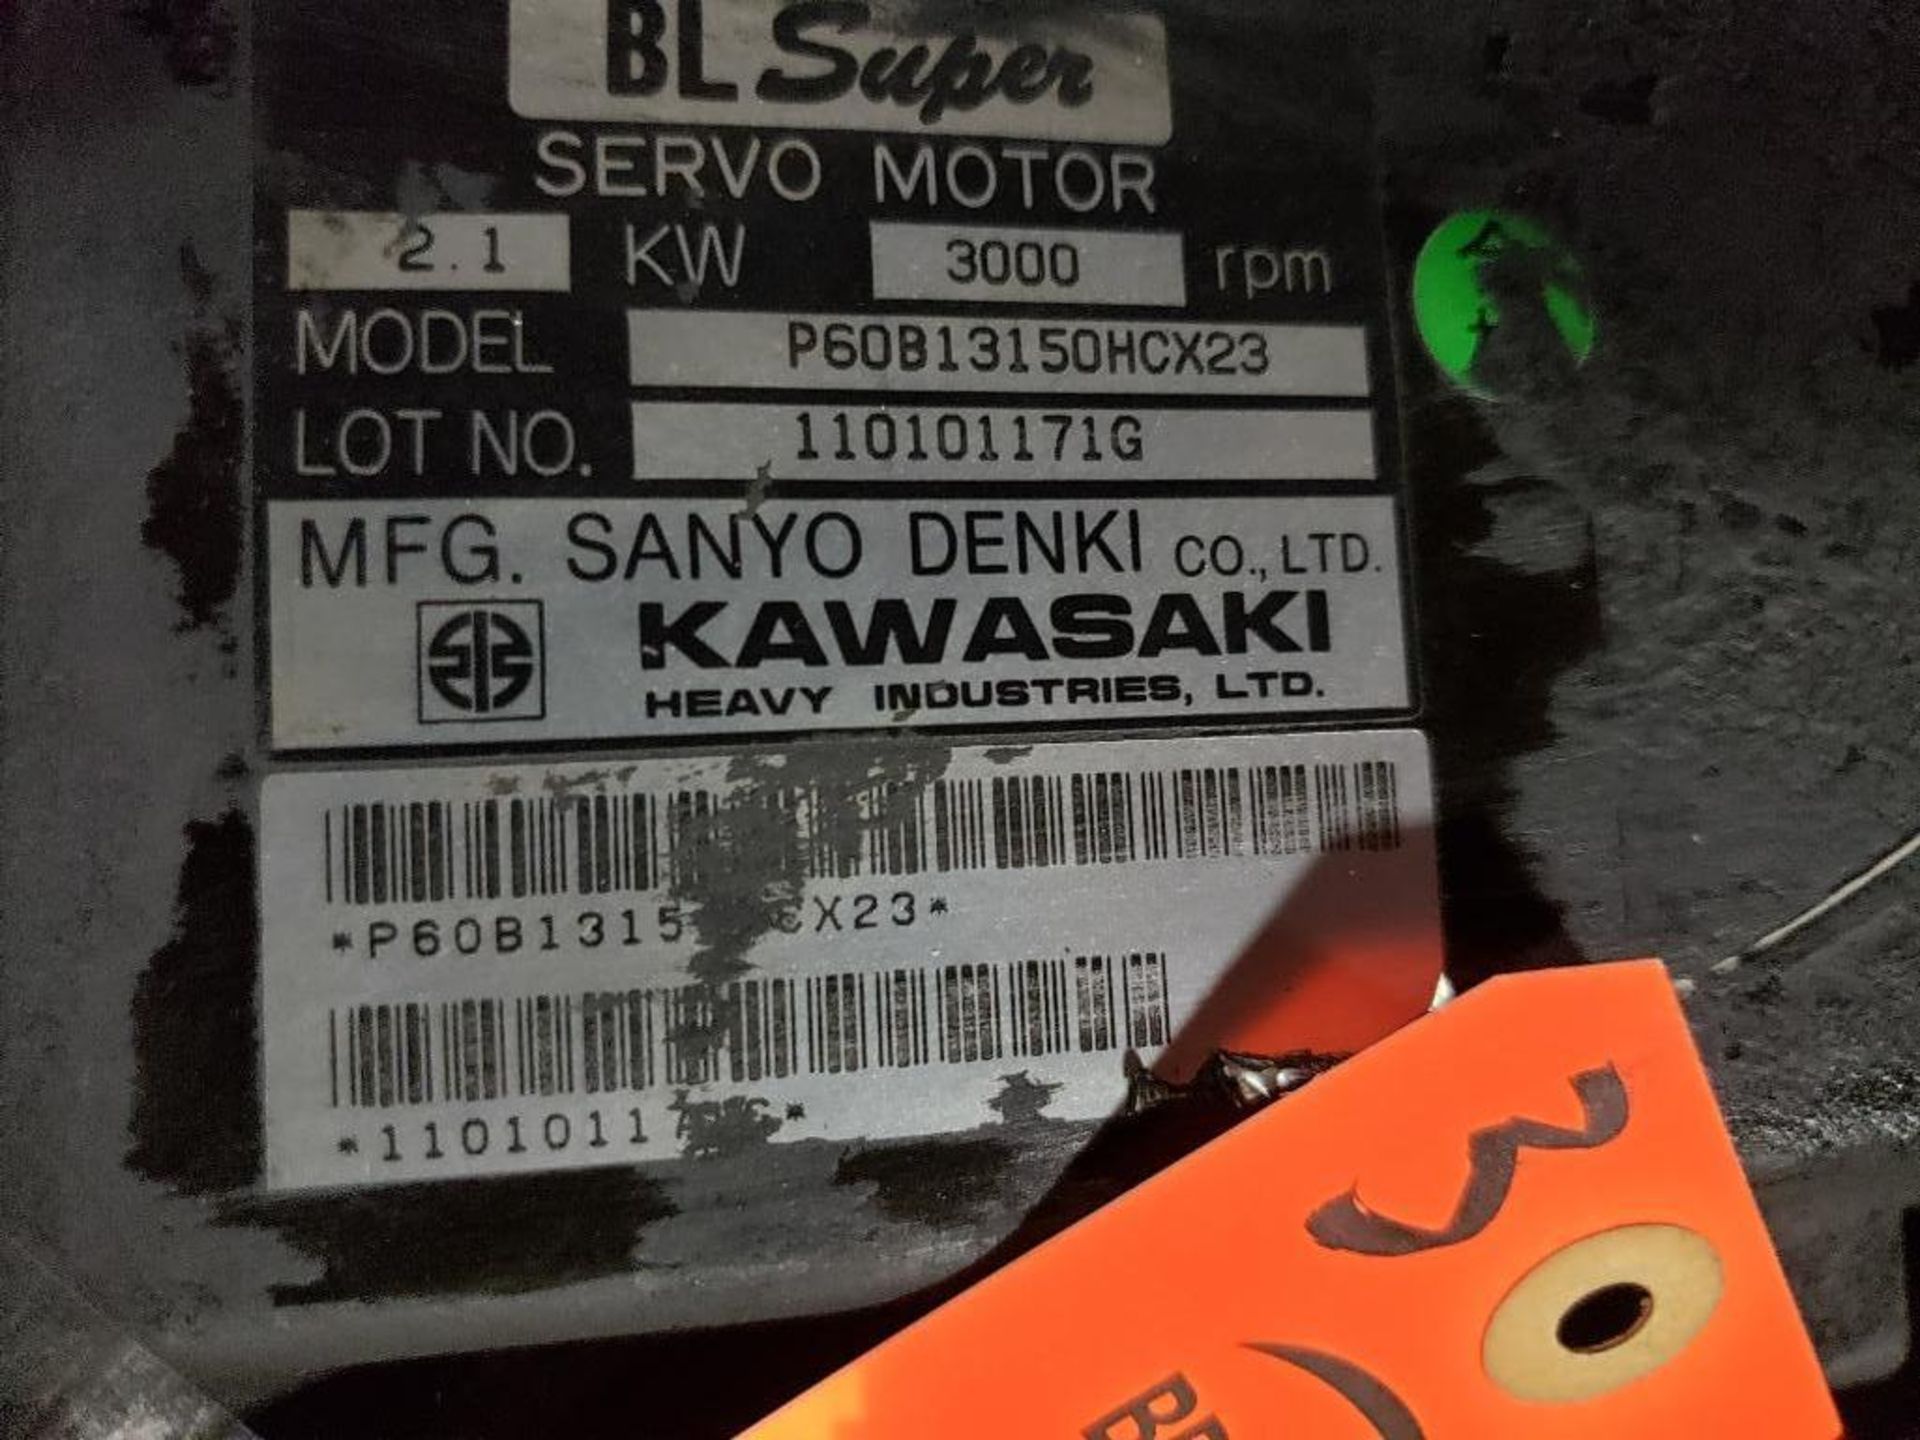 Qty 3 - Kawasaki servo motor. Series BL Super. Model P60B13150HCX23. - Image 4 of 4